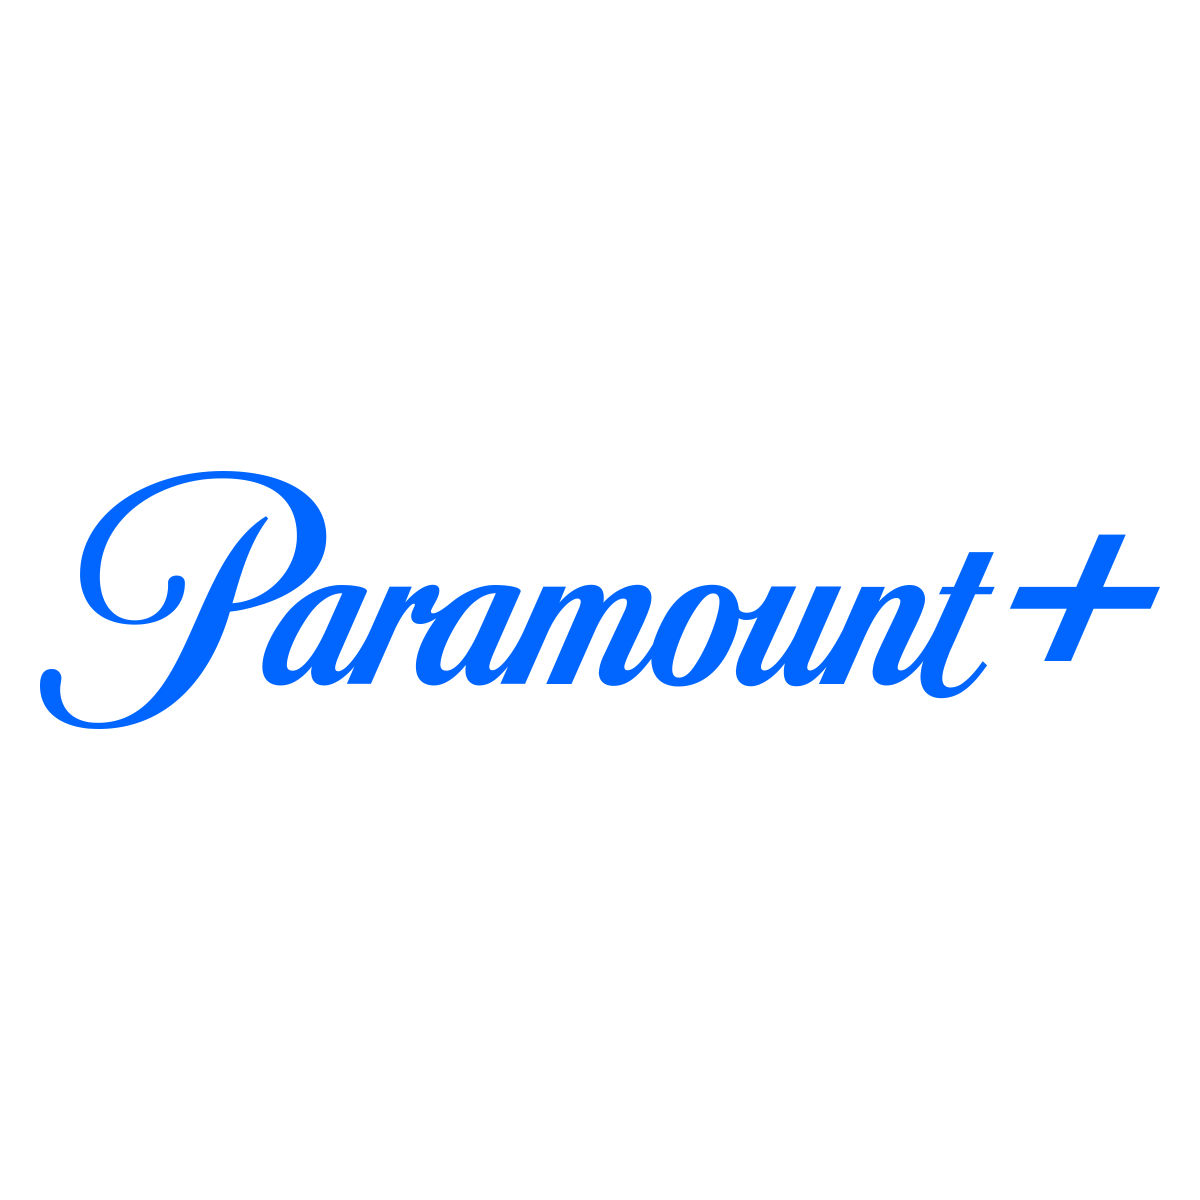 paramount+ broncos game